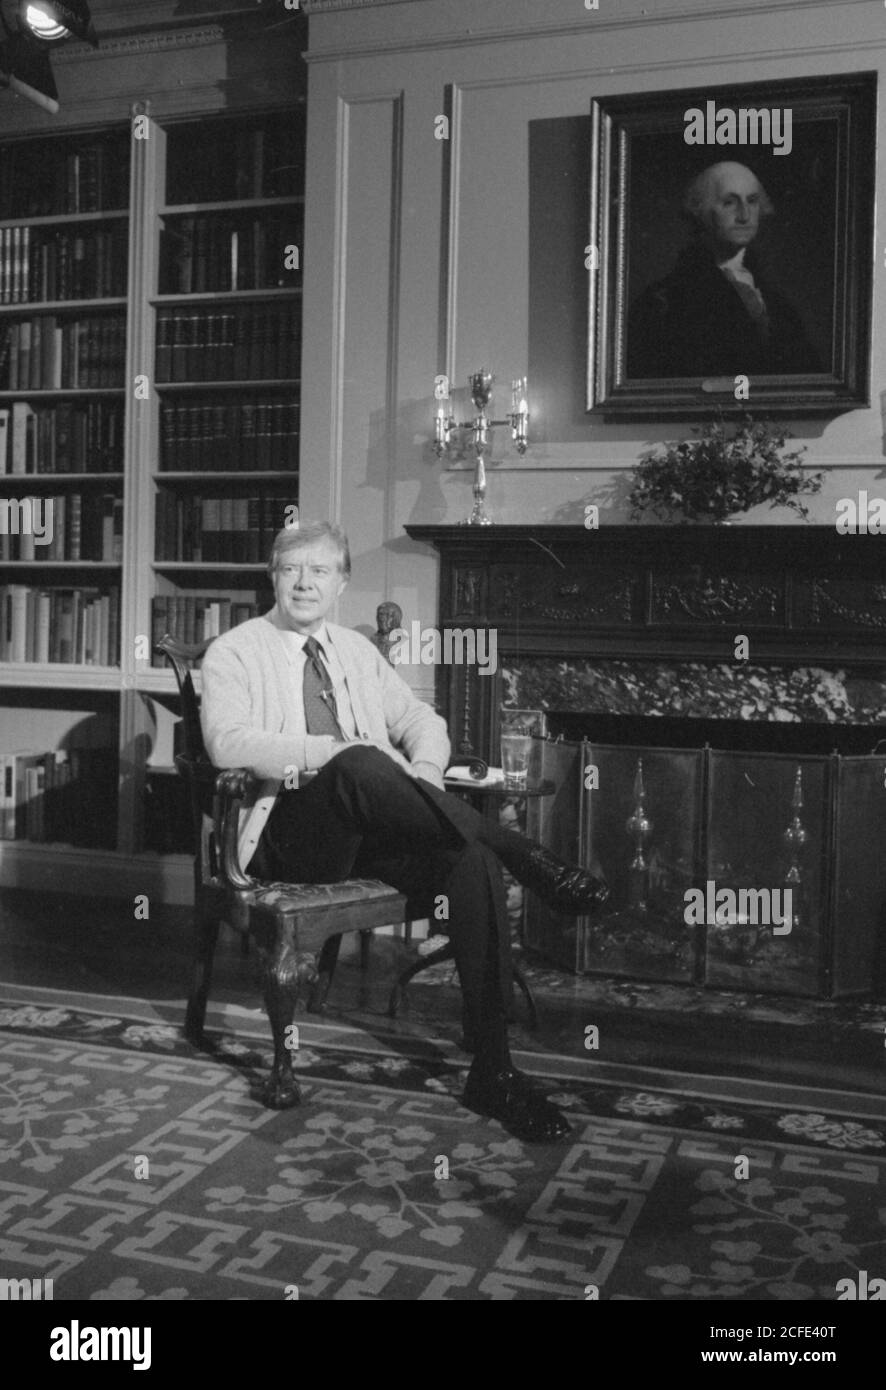 Photographie de Jimmy carter dans la bibliothèque de la Maison Blanche lors d'une conversation télévisée Fireside sur Energy CA. 2 février 1977 Banque D'Images